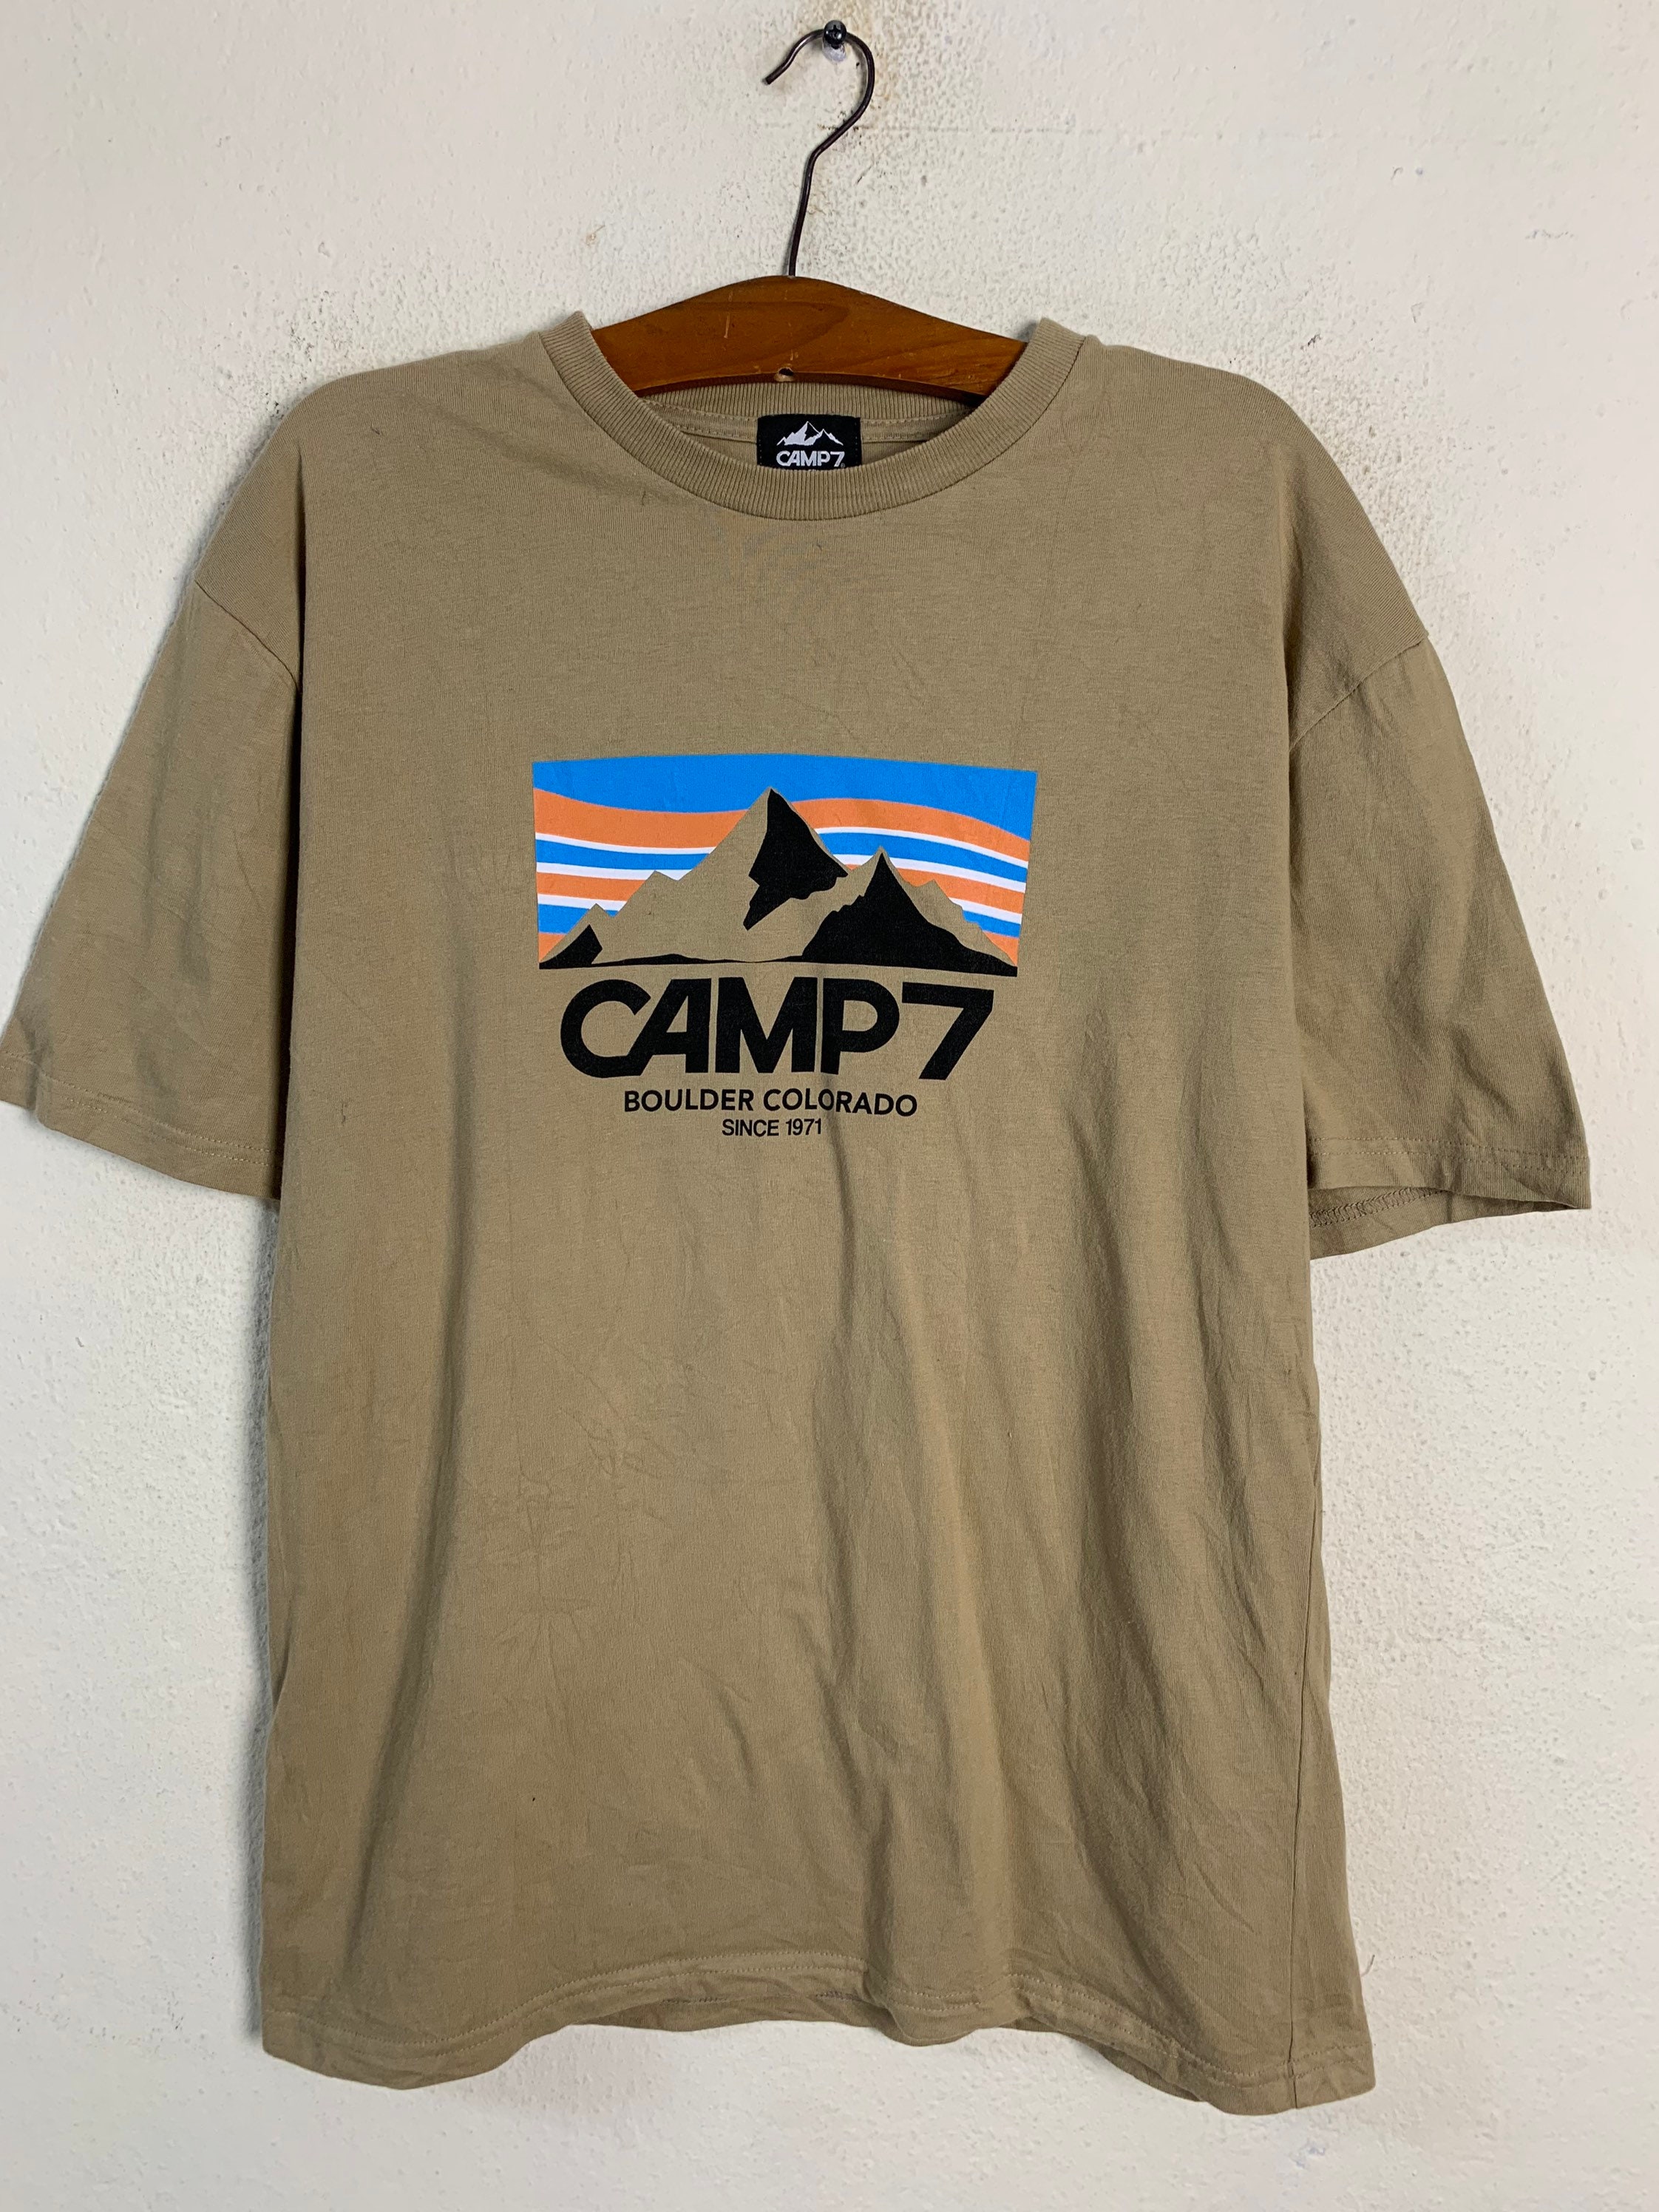 Camp 7 Boulder Colorado Tee